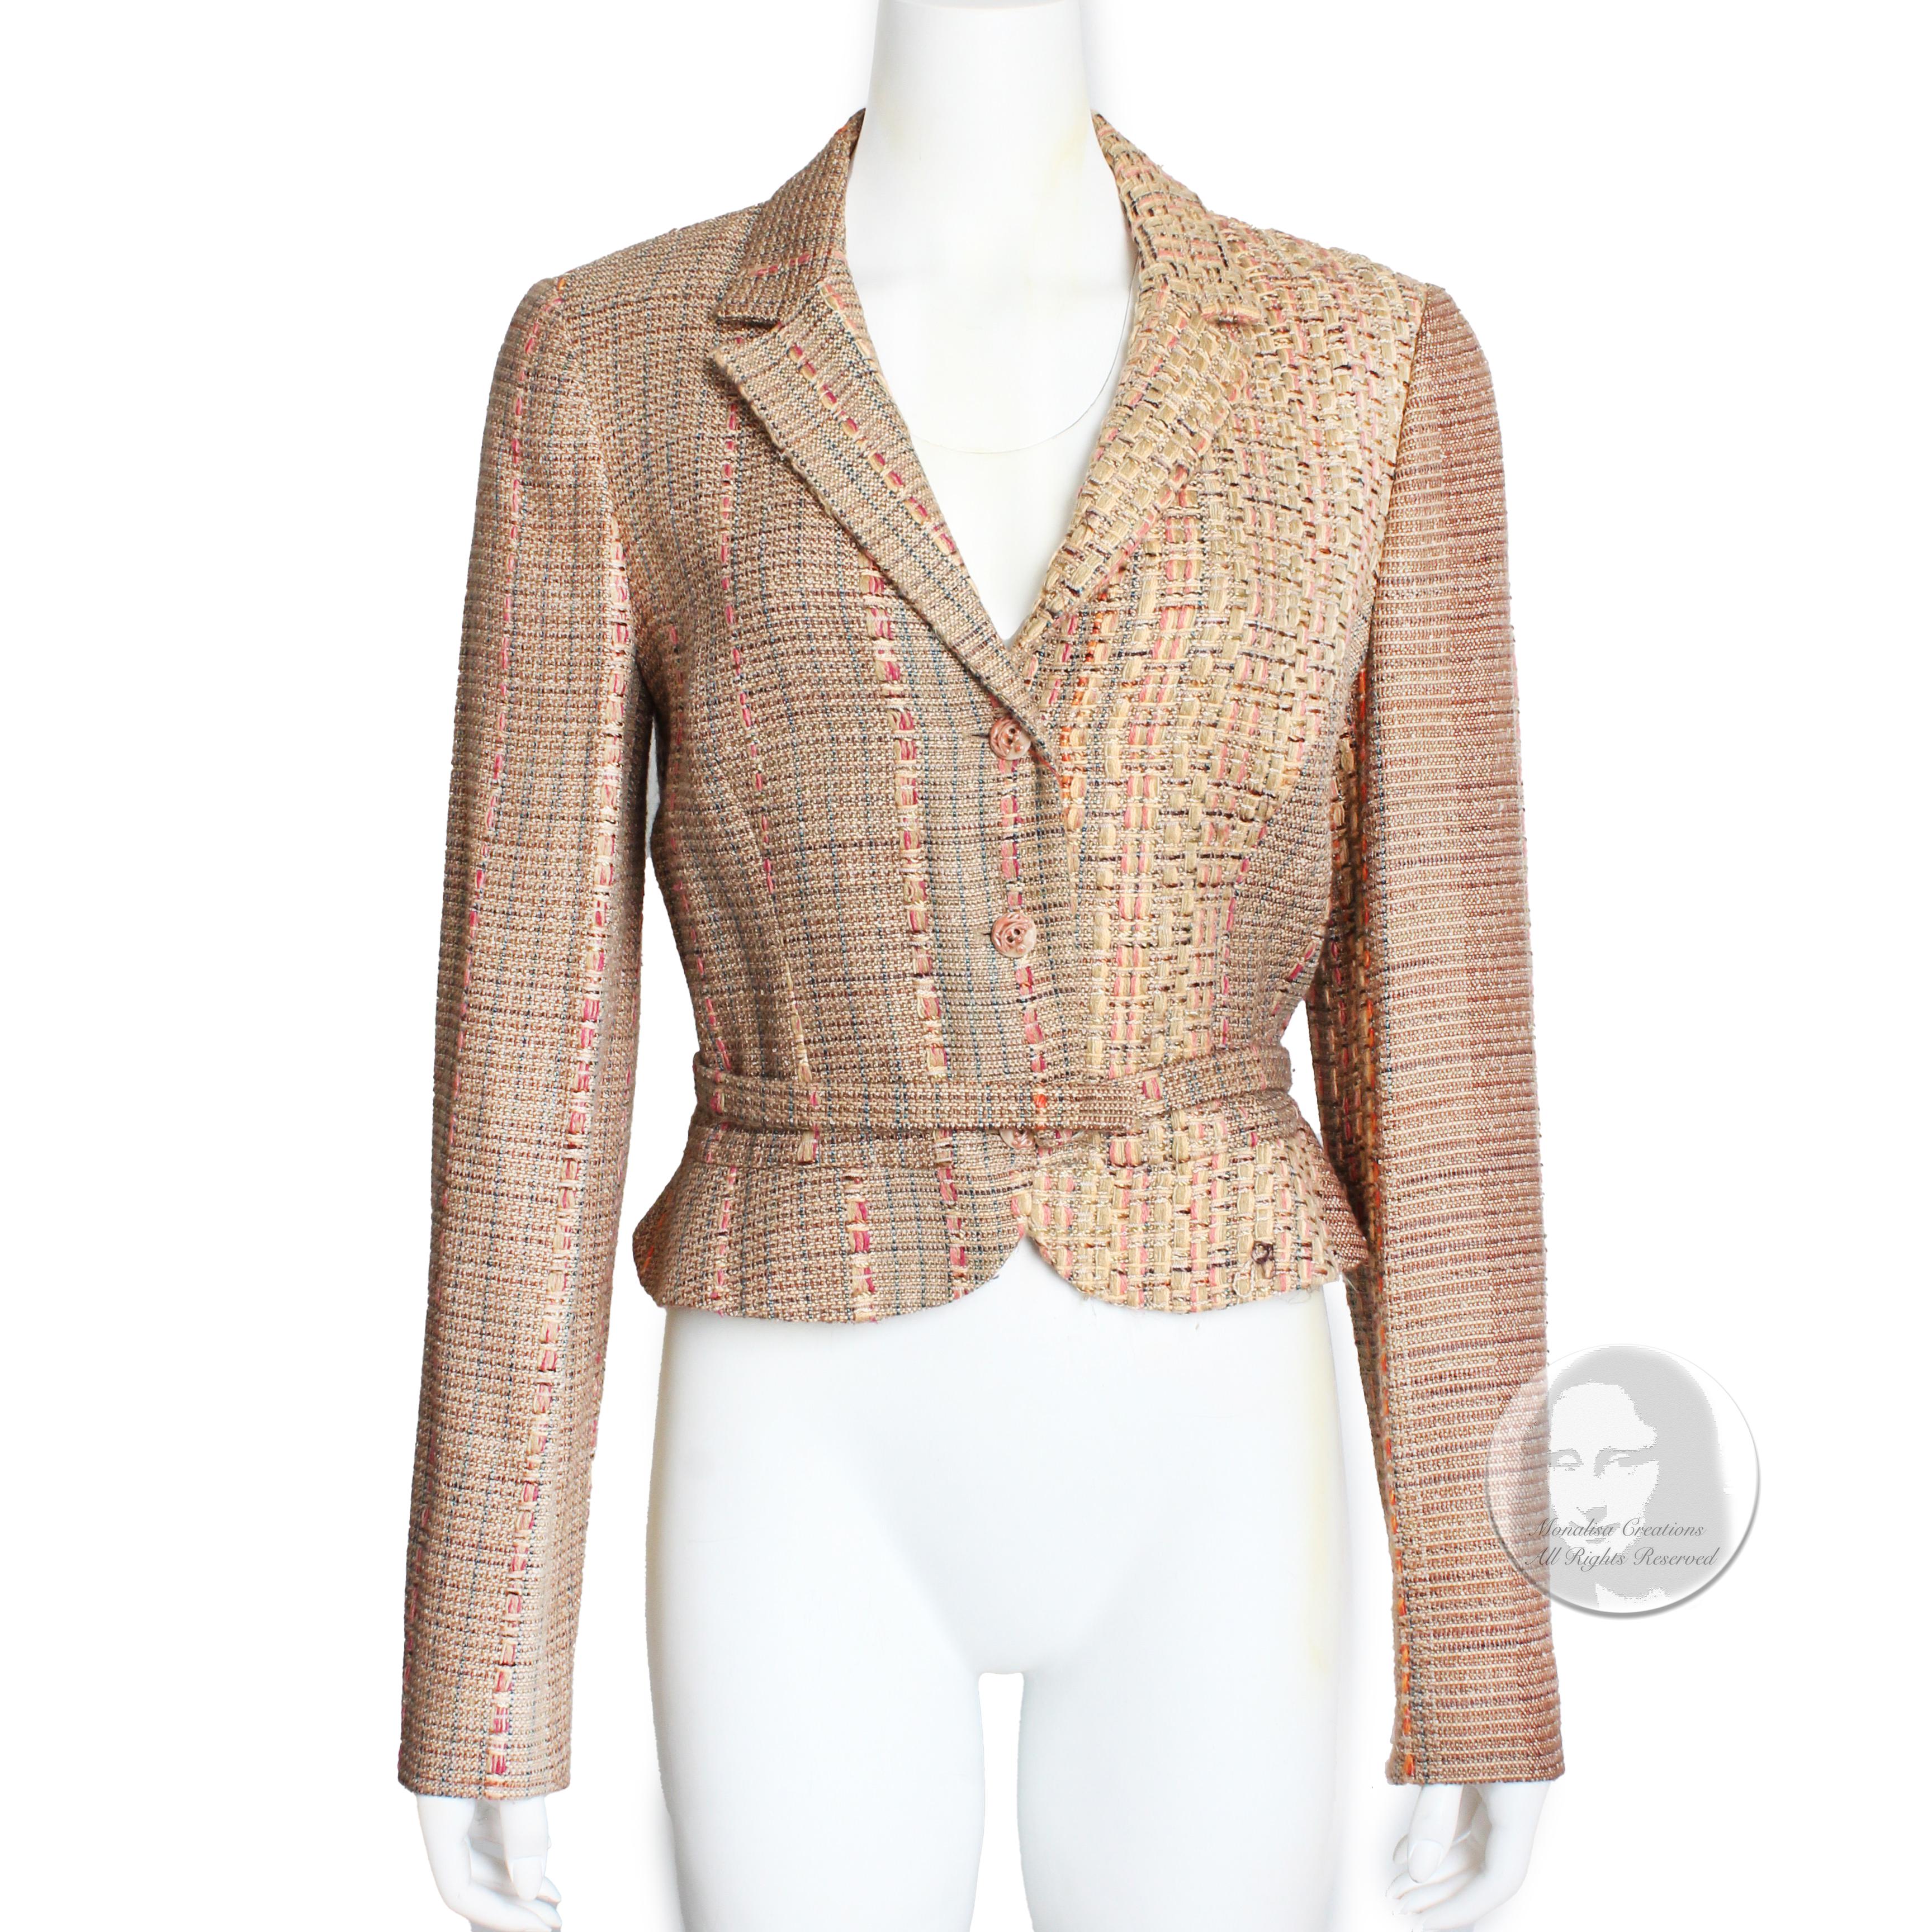 Authentique veste vintage d'occasion en tweed mélangé soie/laine Christian Lacroix avec ceinture, probablement réalisée au début des années 2000. Confectionnée dans un joli tweed en soie/laine, cette veste texturée est courte, se ferme à l'aide de